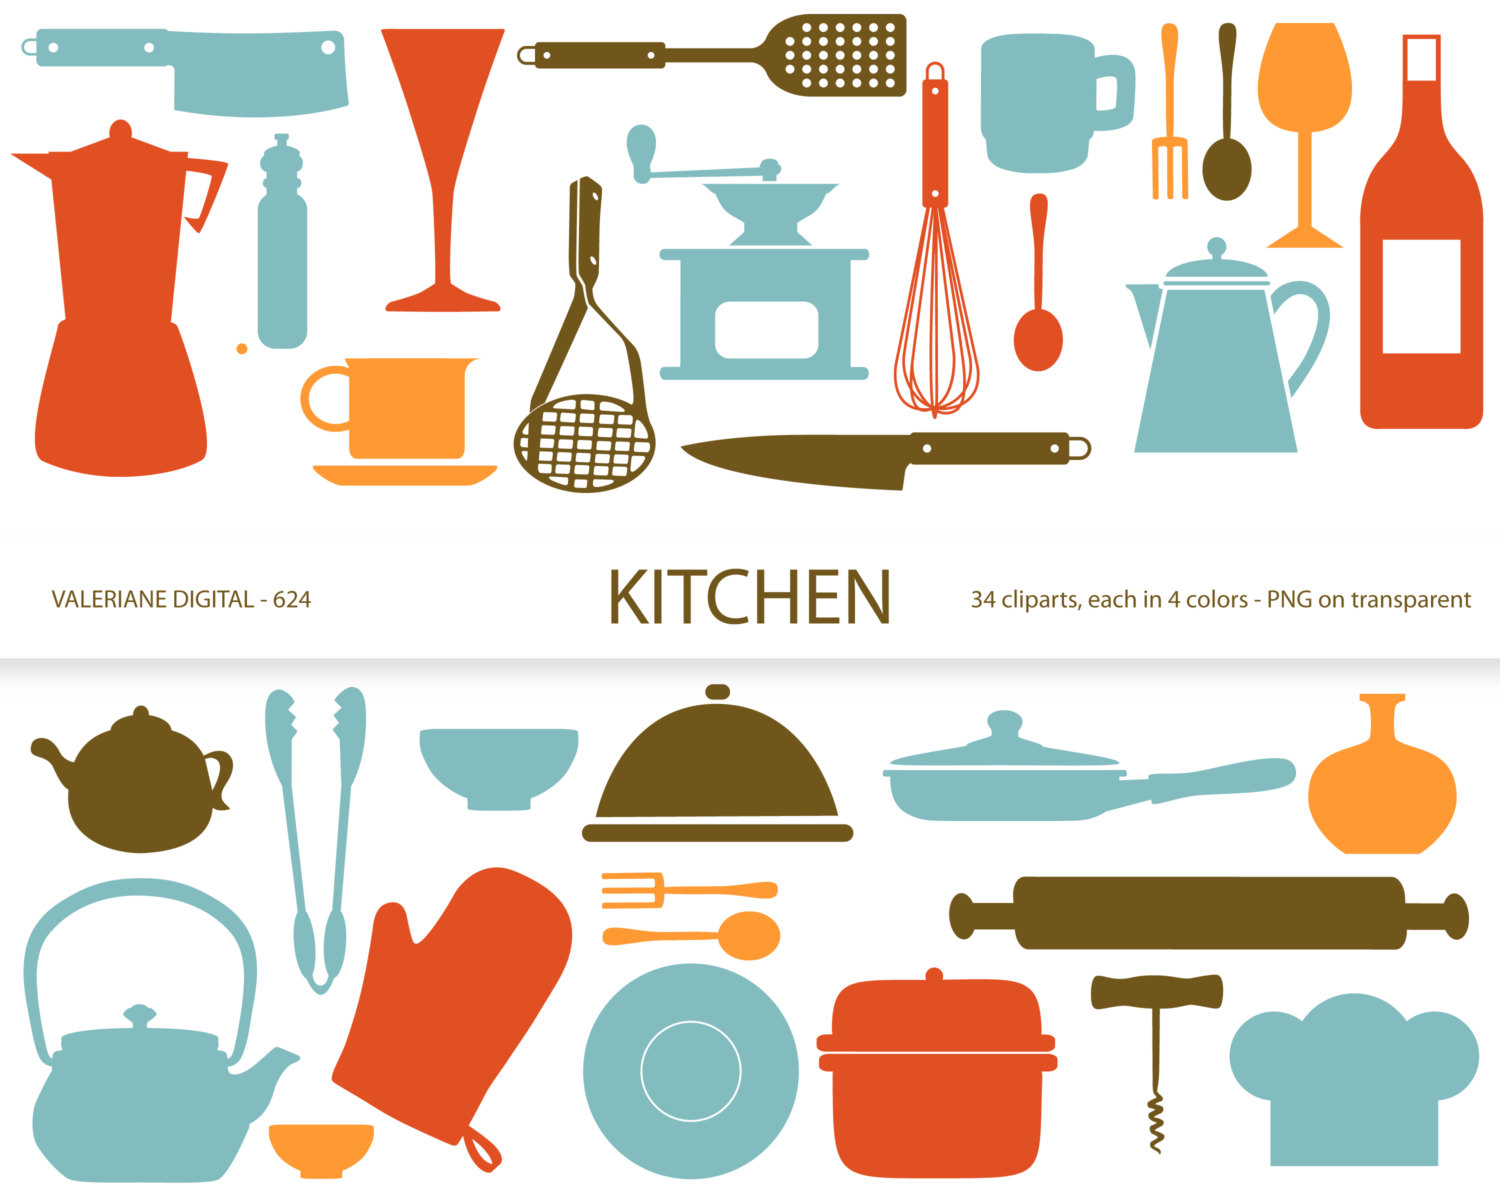 Kitchen clipart - Free Kitchen Clipart